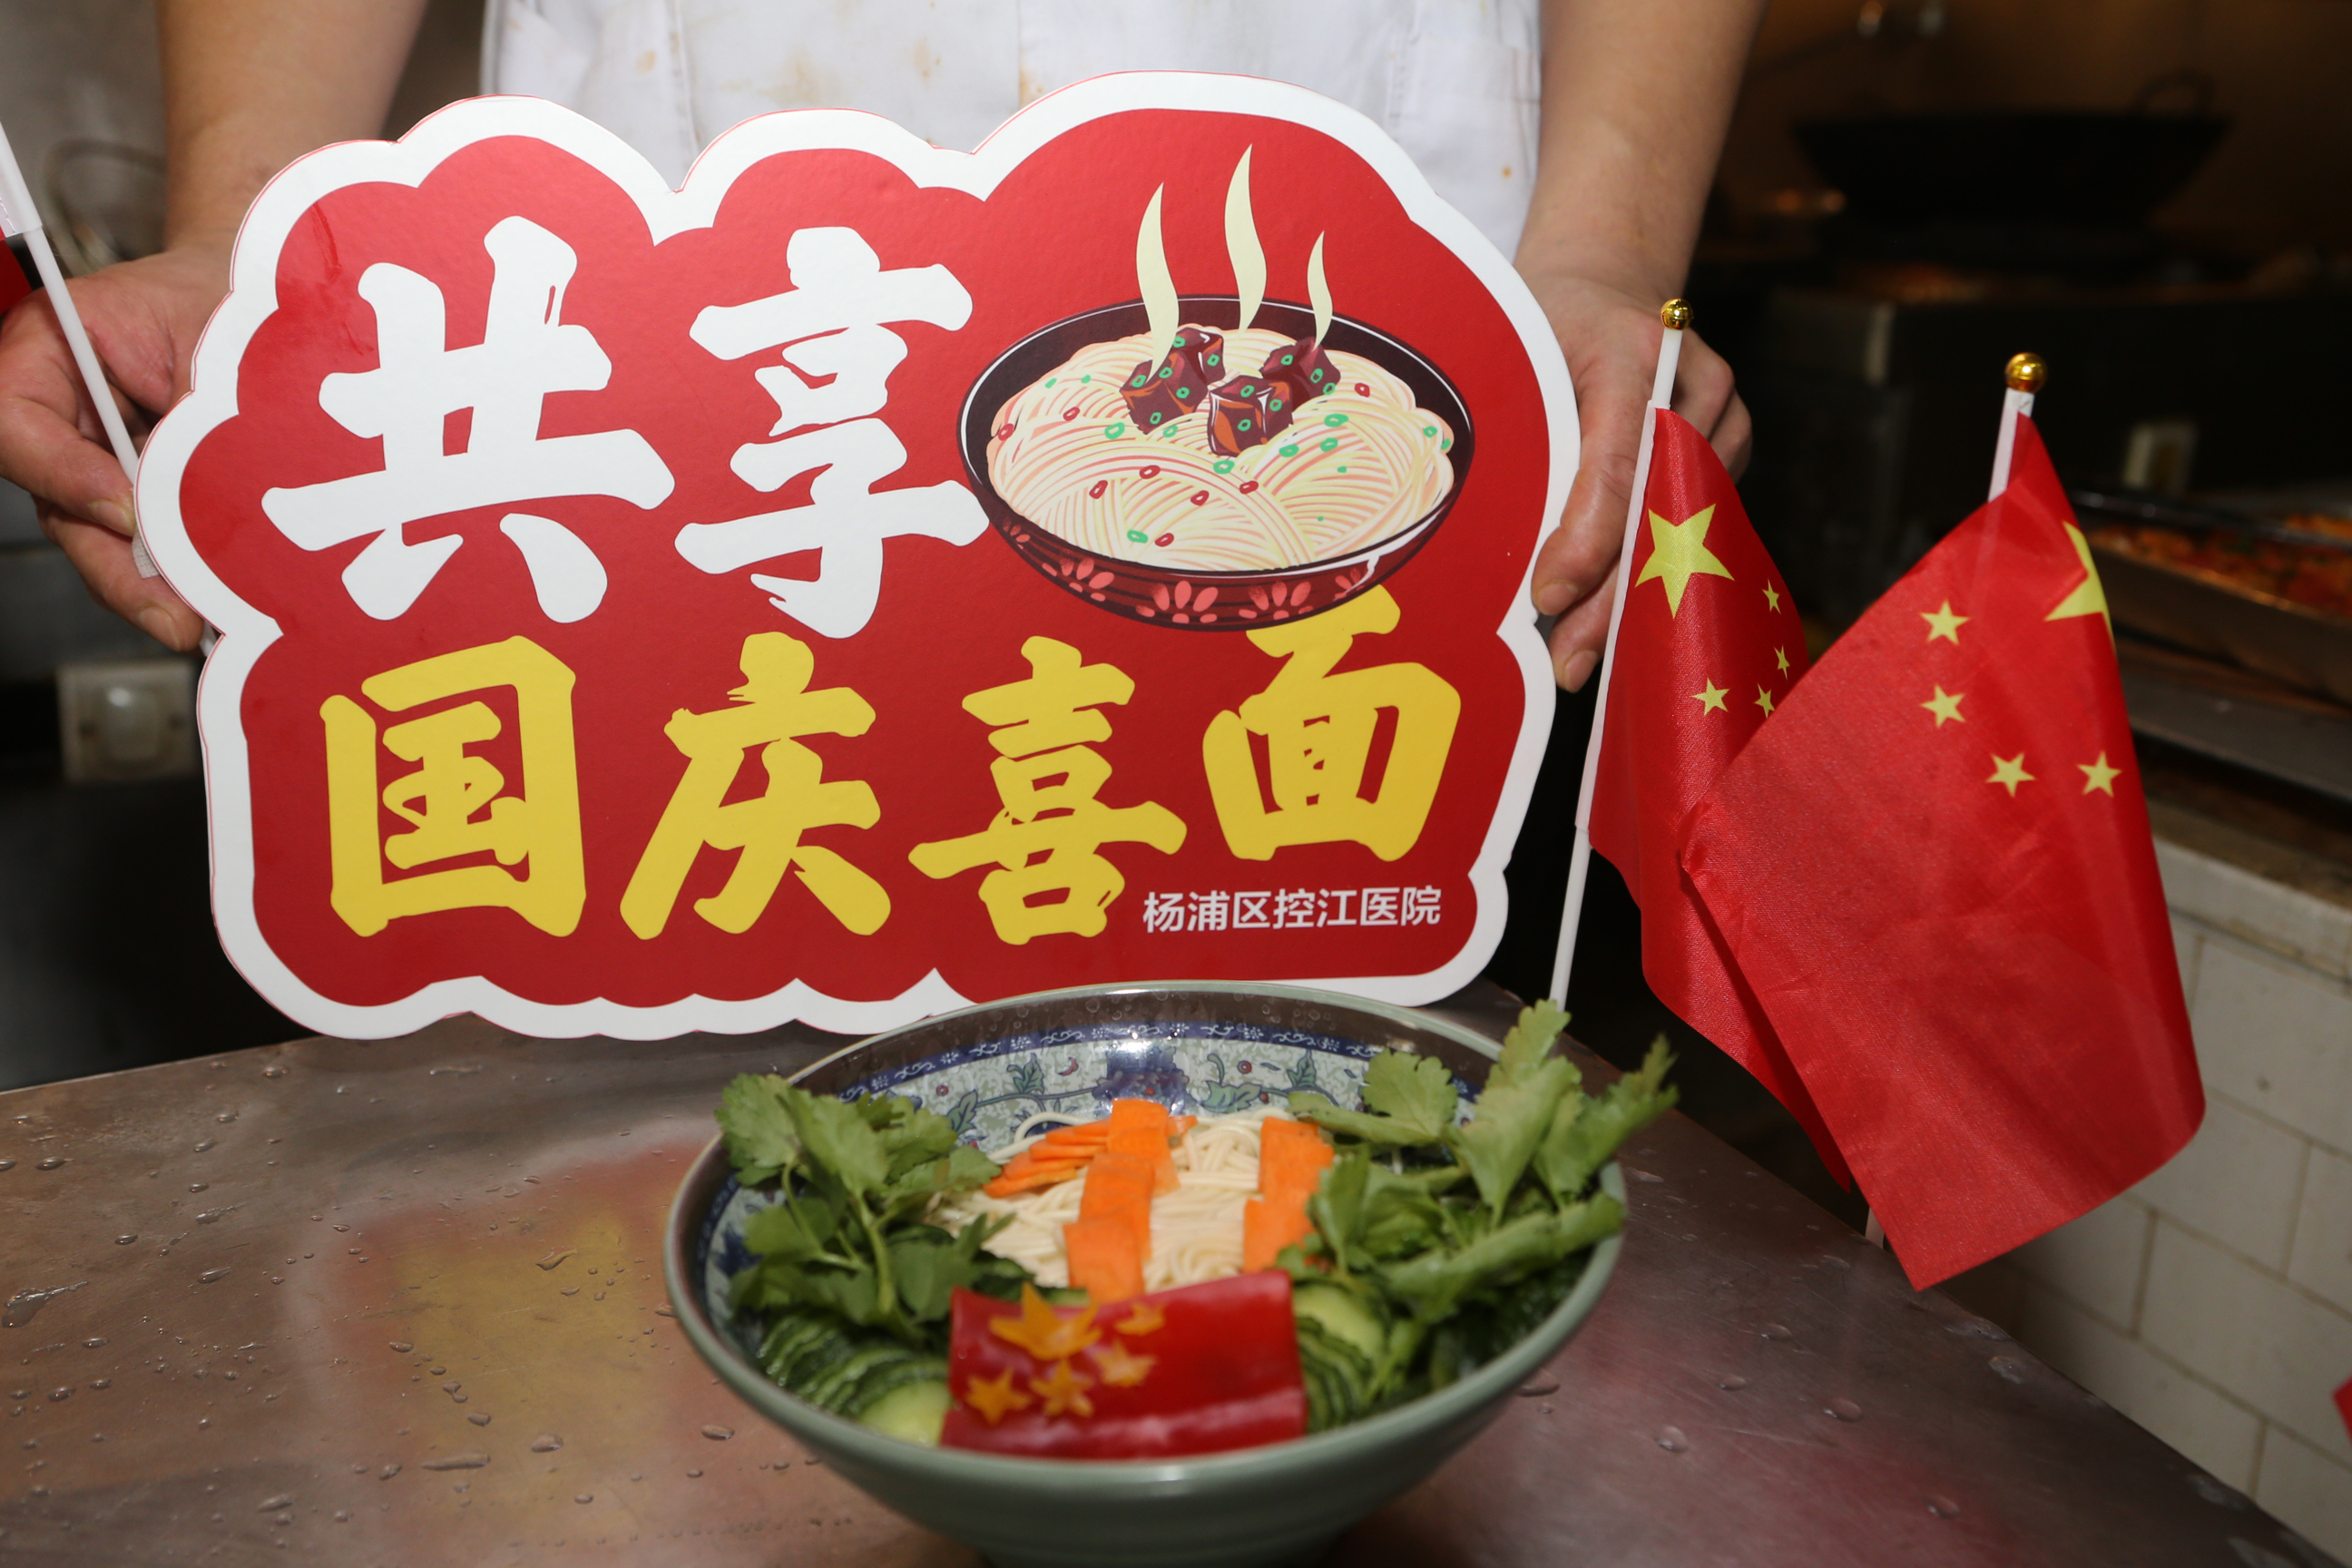 杨浦区控江医院膳食科后厨们制作的“国庆面”。控江医院供图